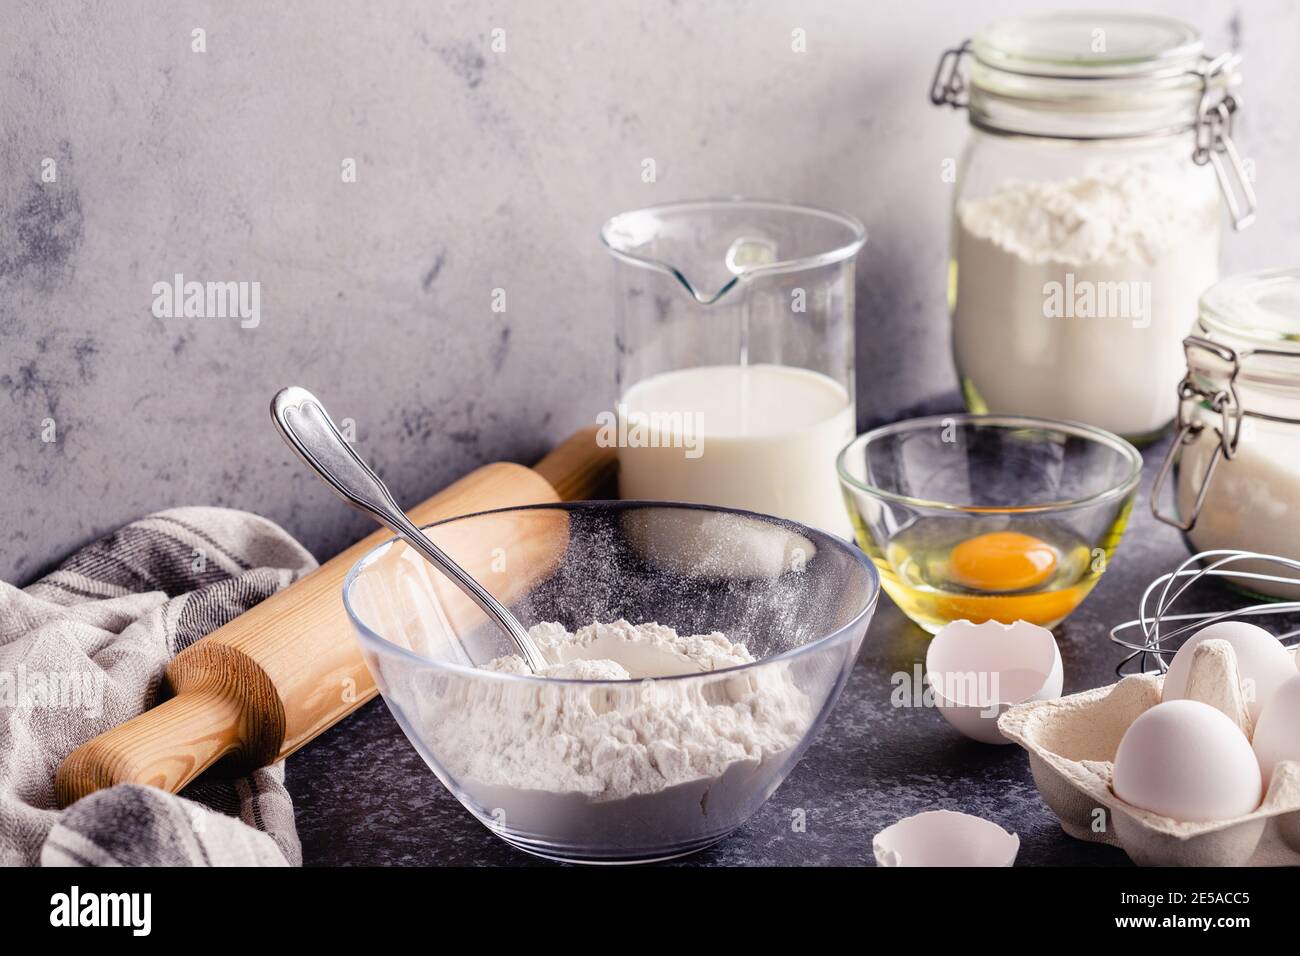 Fond de cuisson. Ingrédients de cuisson pour la pâte, les œufs, la farine, le sucre, le lait. Banque D'Images